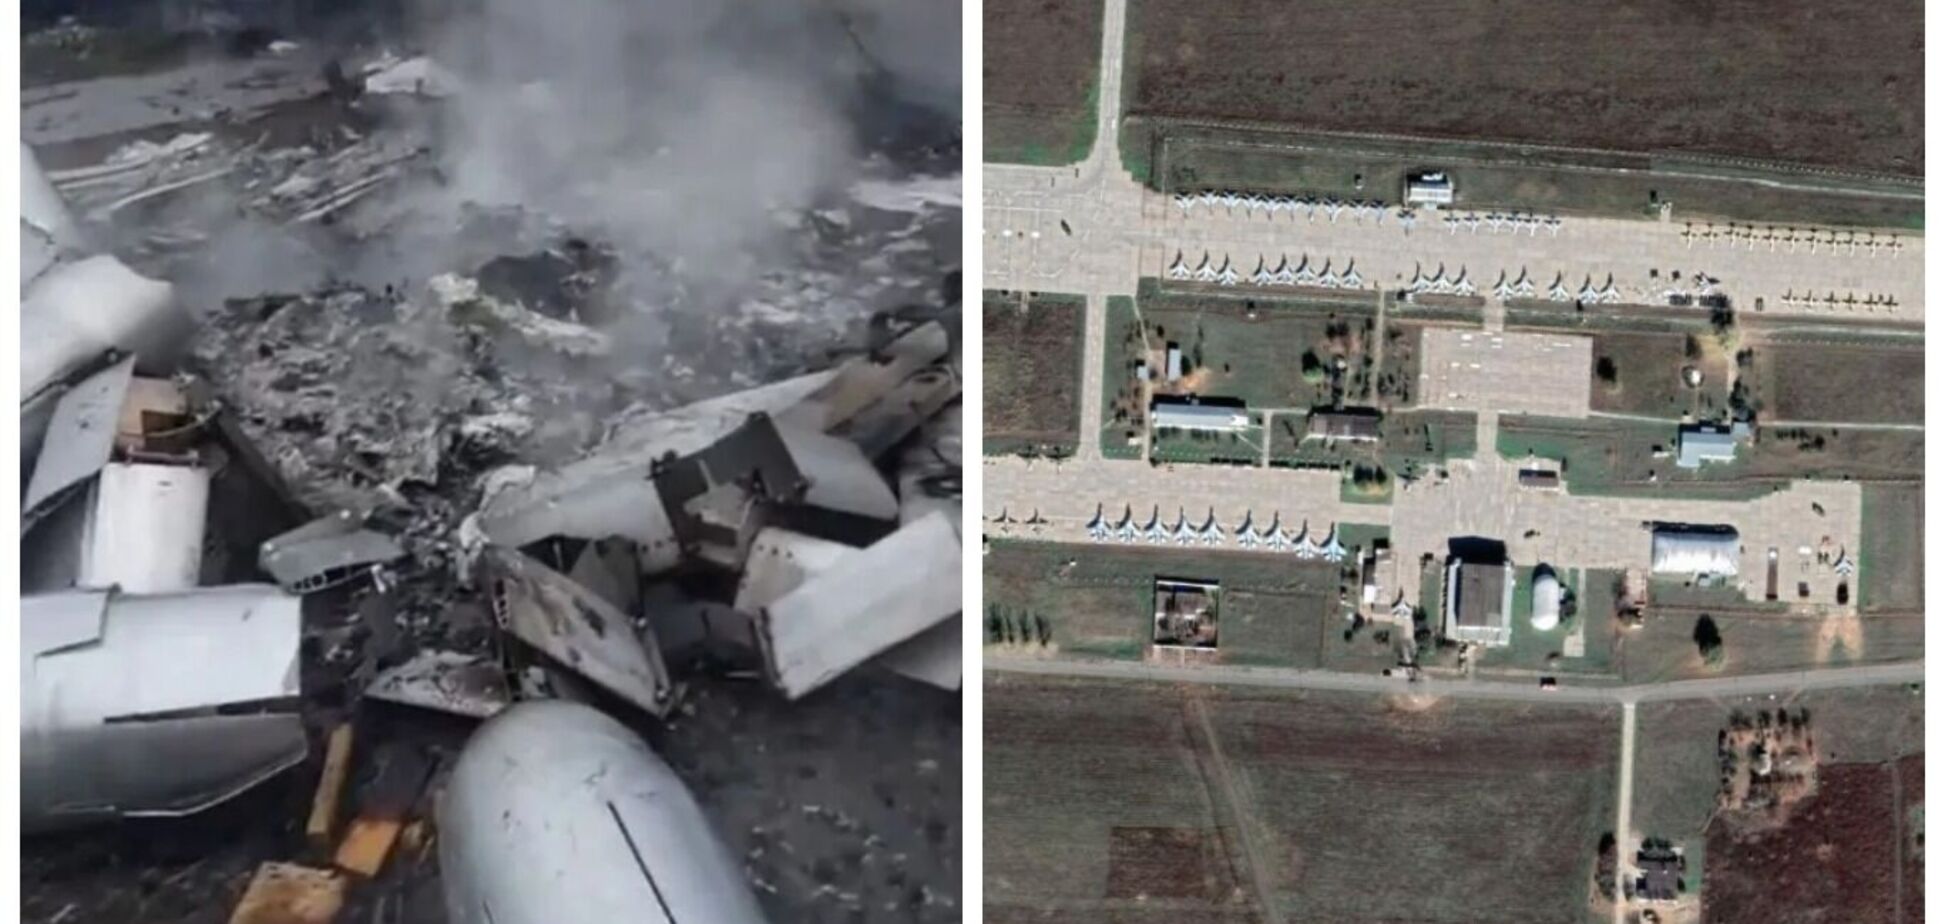 Обгоревшие модули для КАБов и изуродованные самолеты: в сети показали возможные последствия удара по военному аэродрому в РФ